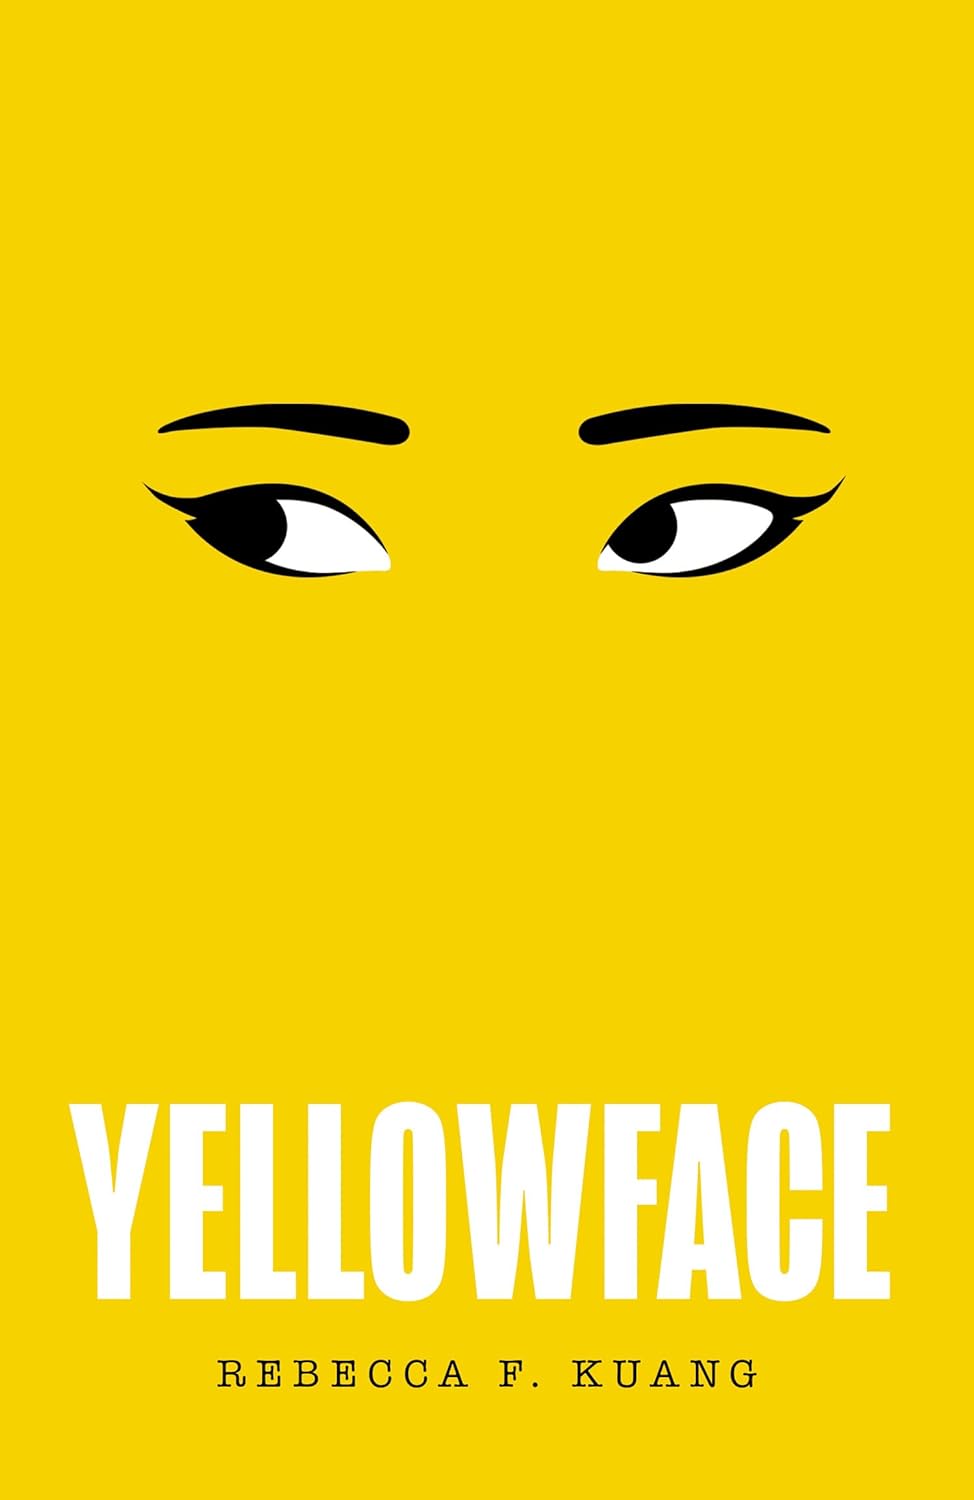 Yellow Face-Rebecca F Kuang-Stumbit Books